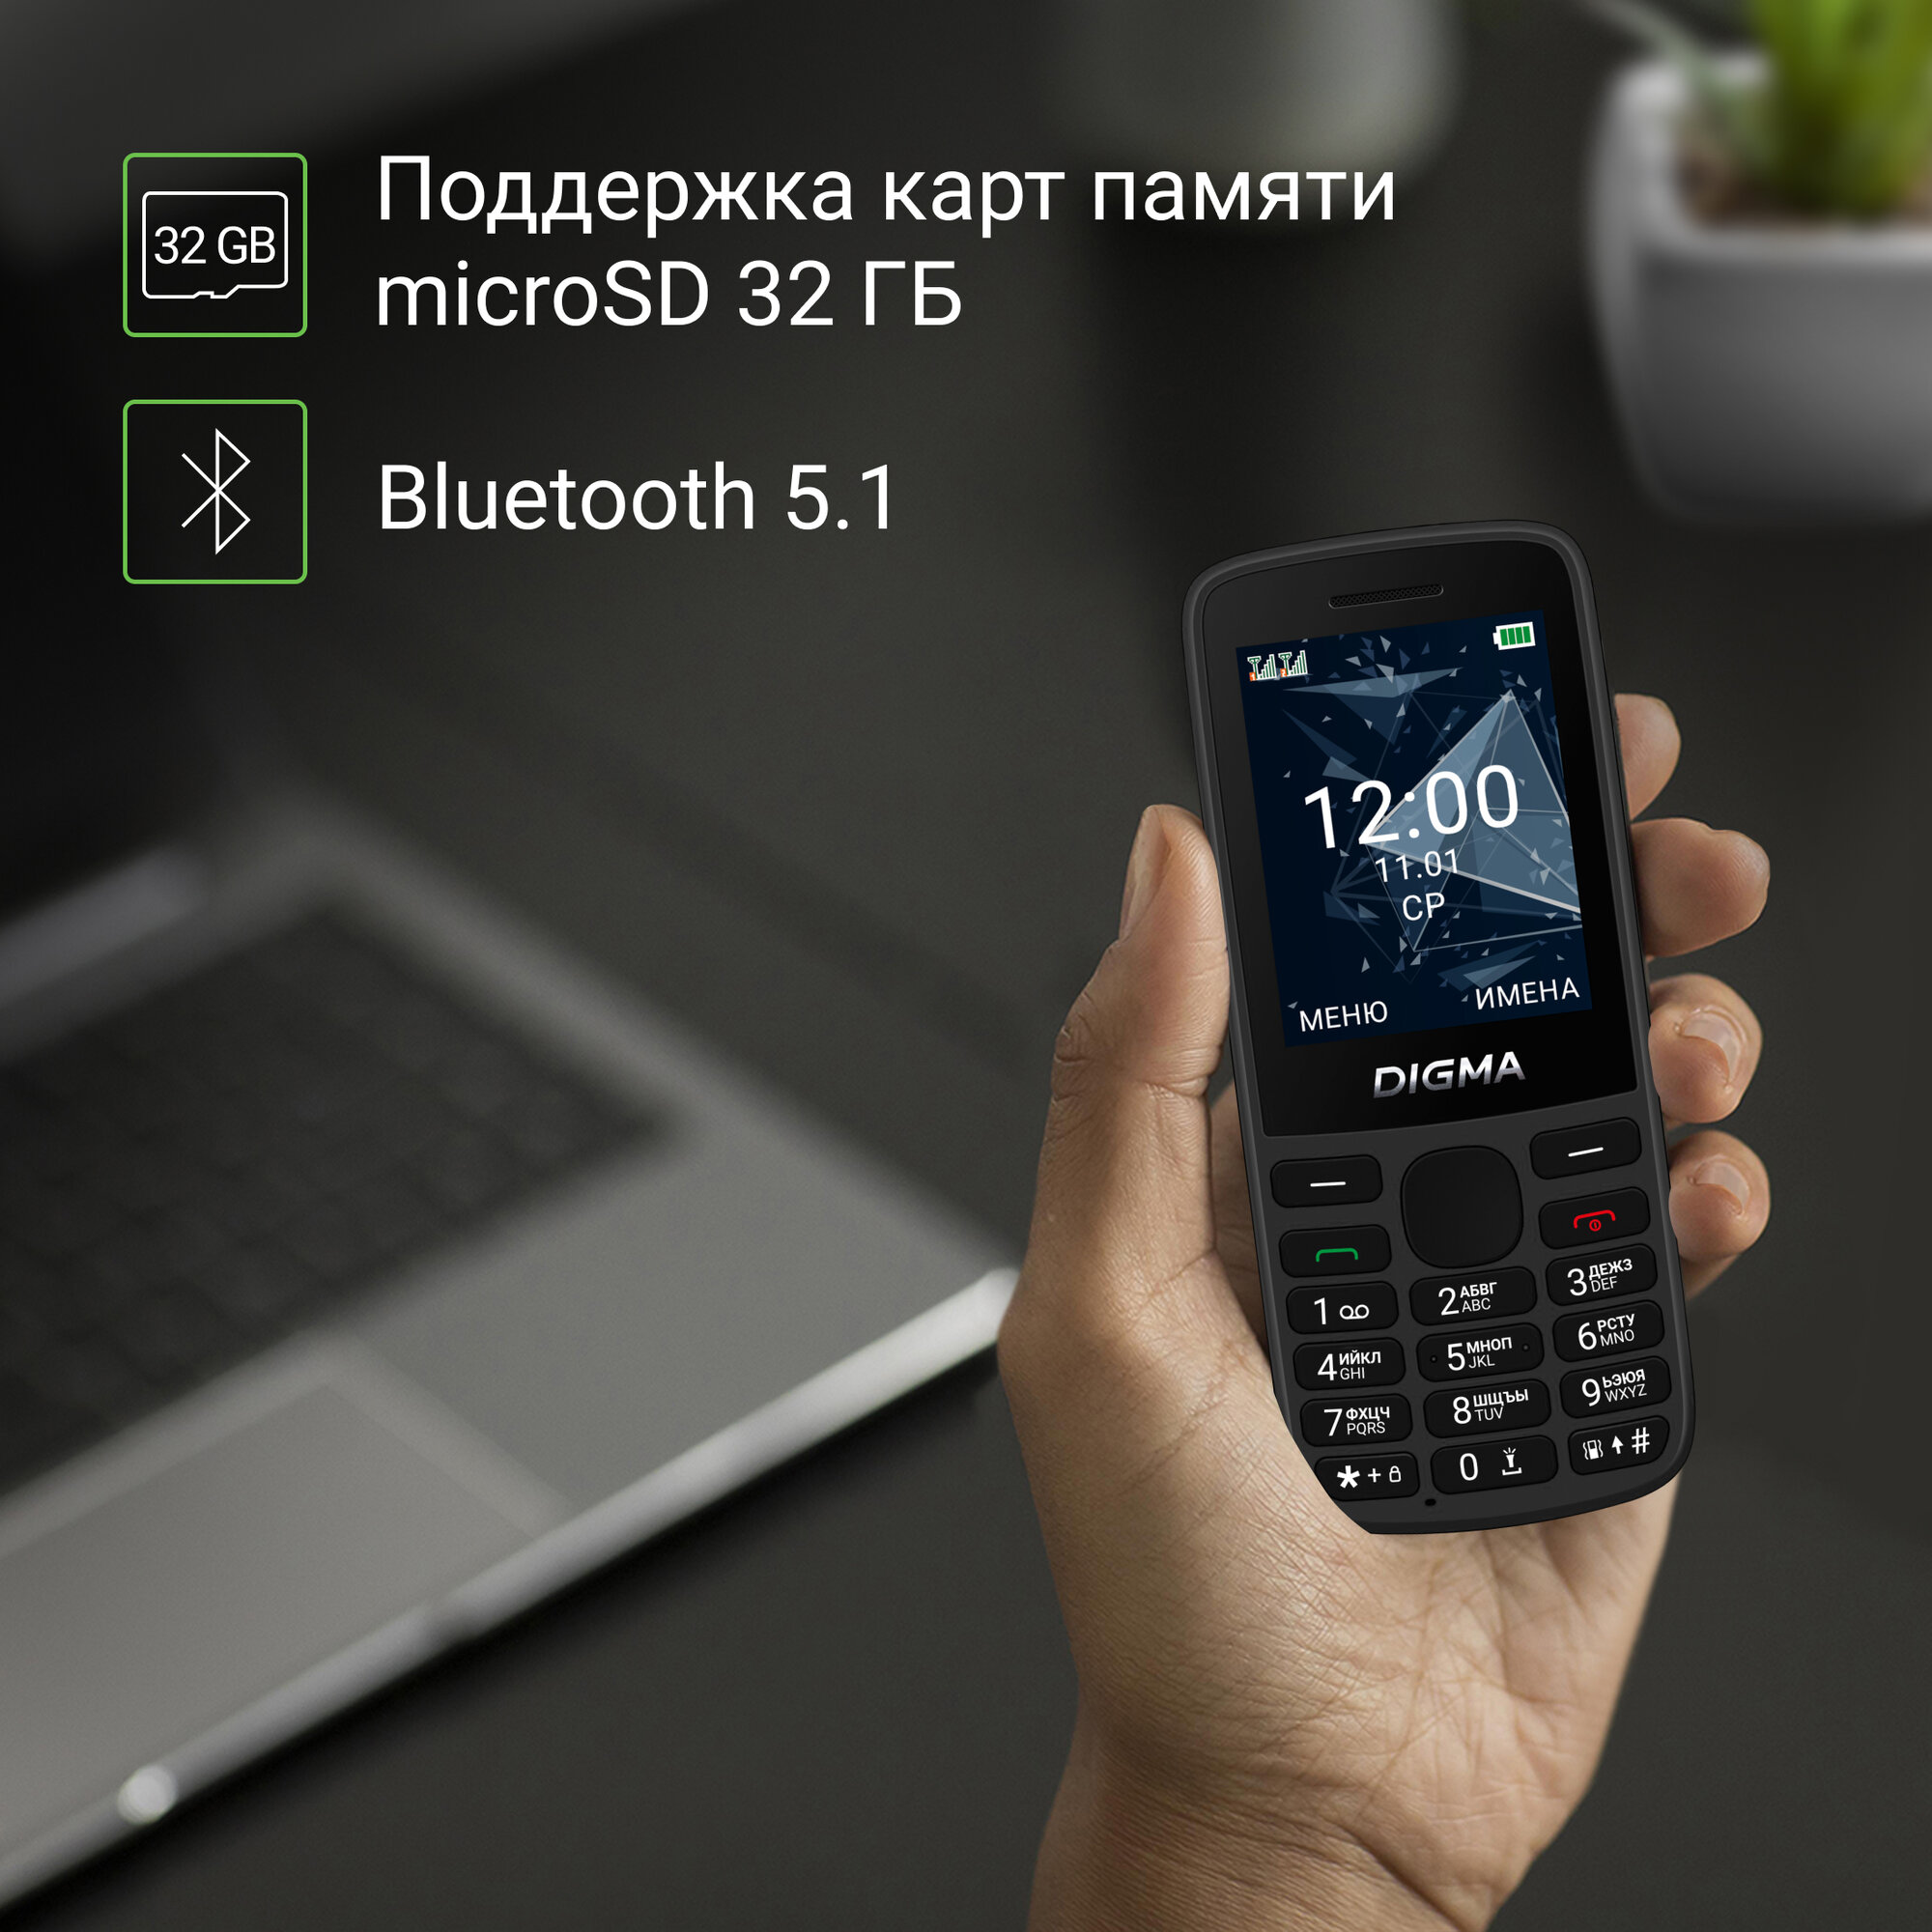 Мобильный телефон Digma 1888918 Linx 128Mb 0.048 зеленый моноблок 3G 4G 2Sim 2.4" 240x320 GSM900/1800 GSM1900 - фото №10